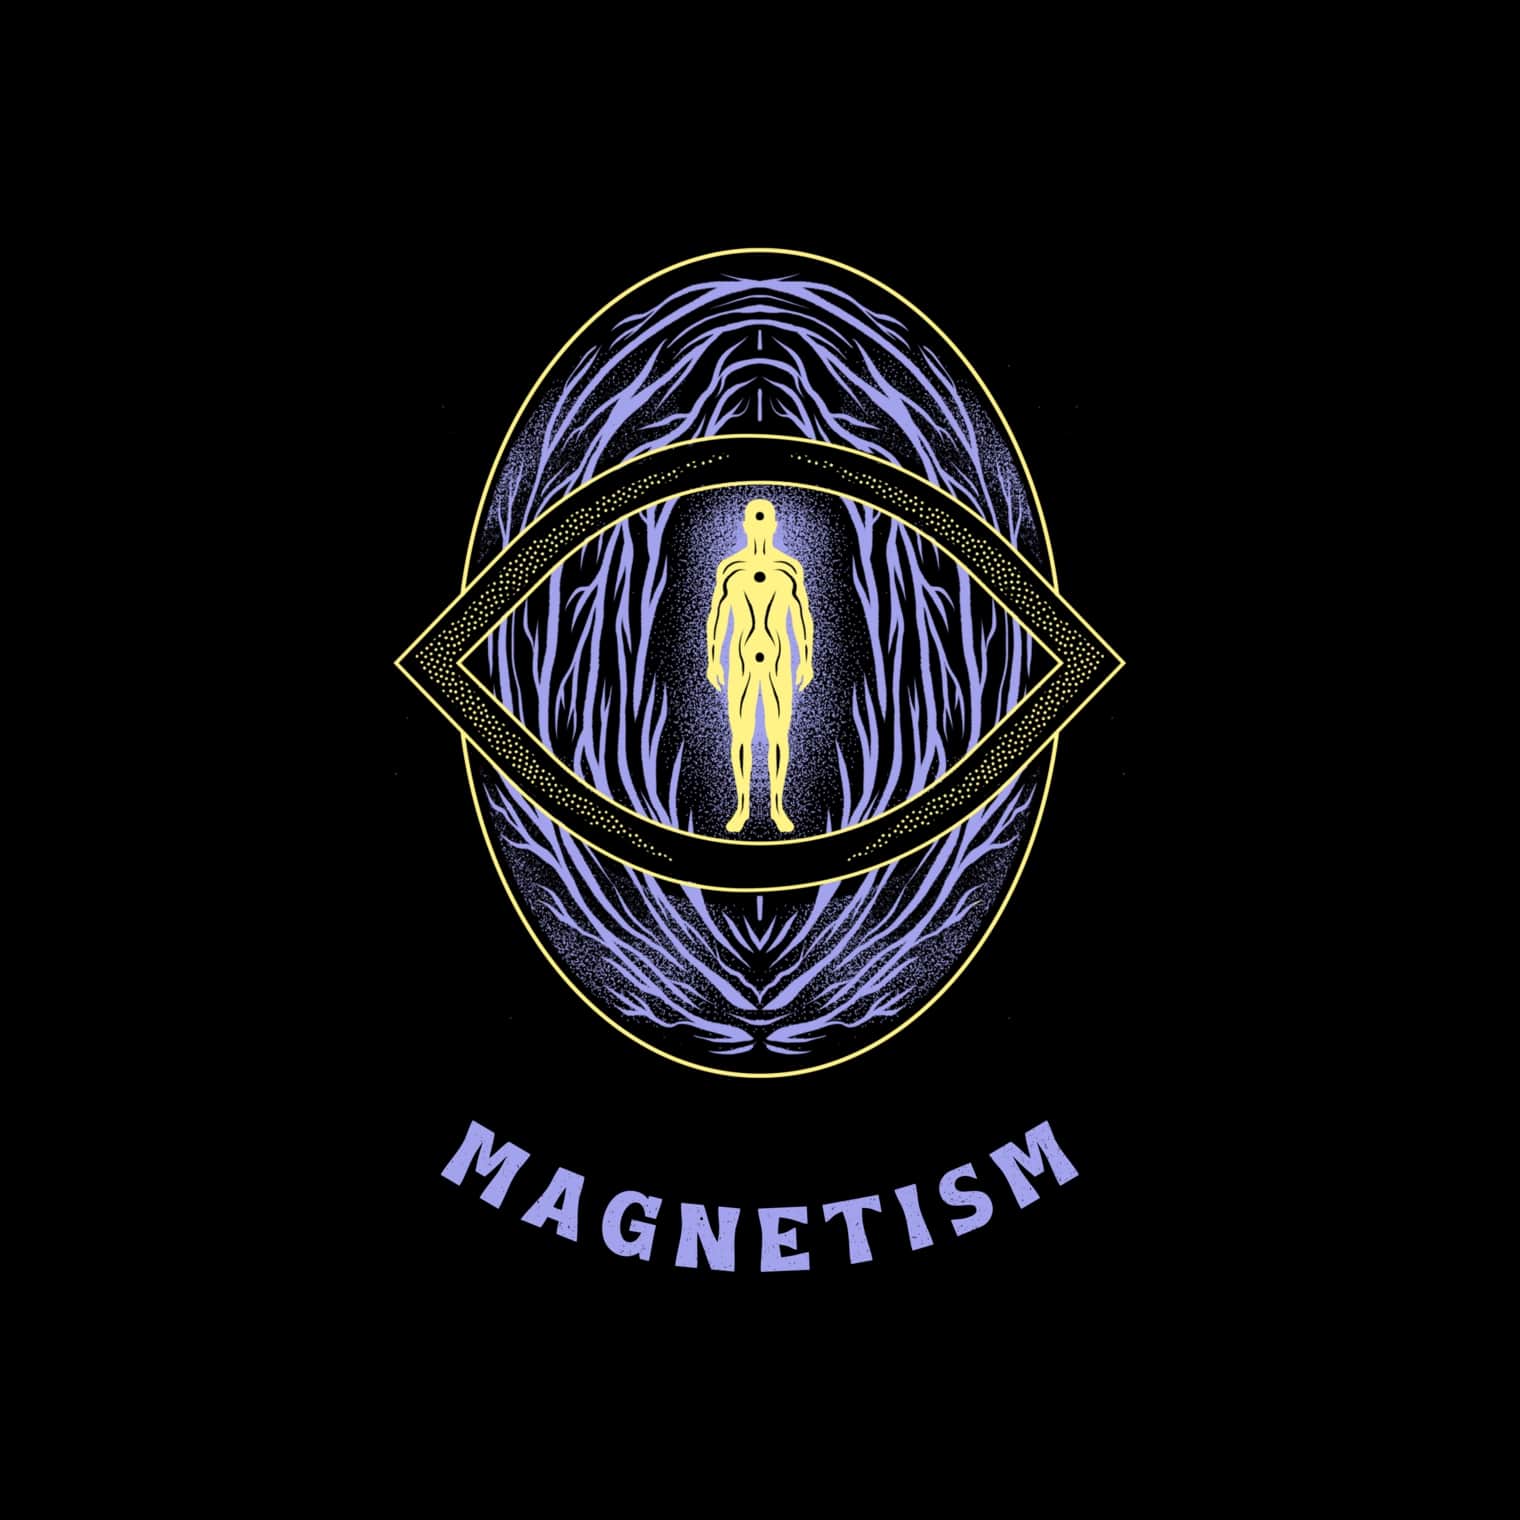 Service magnetisme sessie door een magnetiseur in Brussel in België gratis online via de telefoon